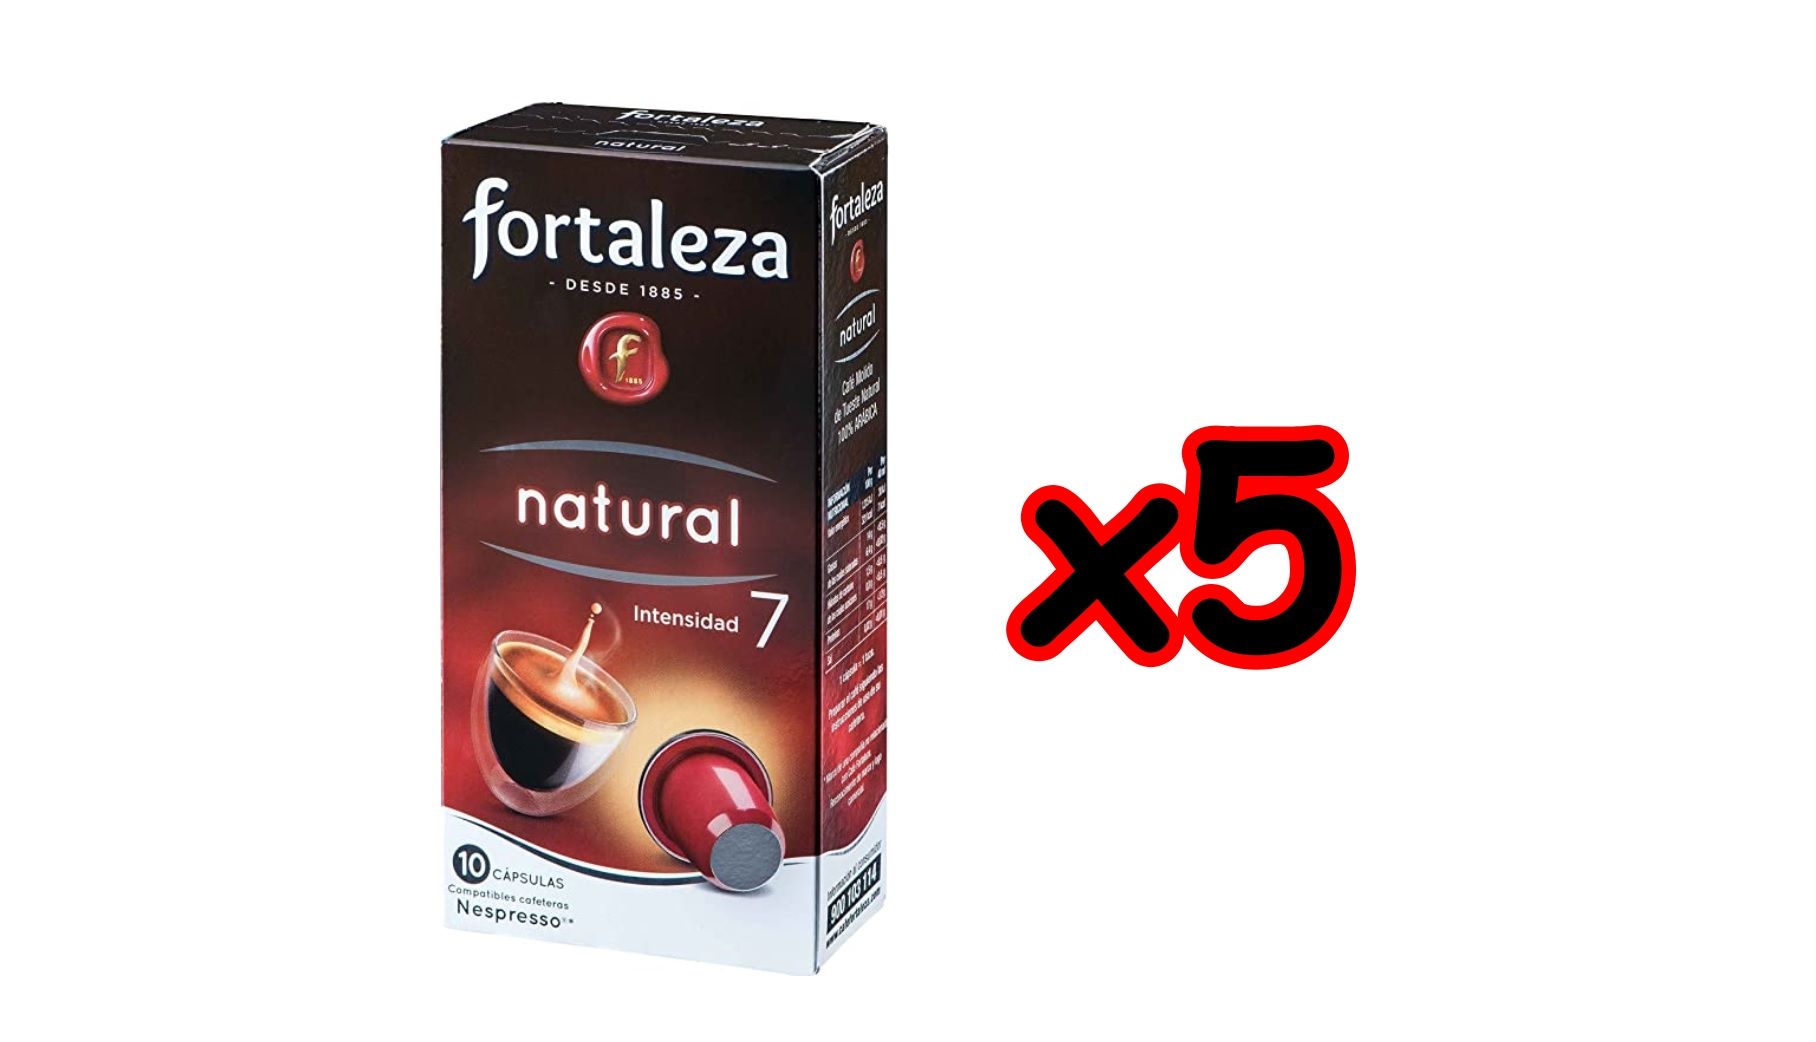 Pack de 50 cápsulas de Café Fortaleza natural compatible con Nespresso por 10,72€ (antes 15,95€)